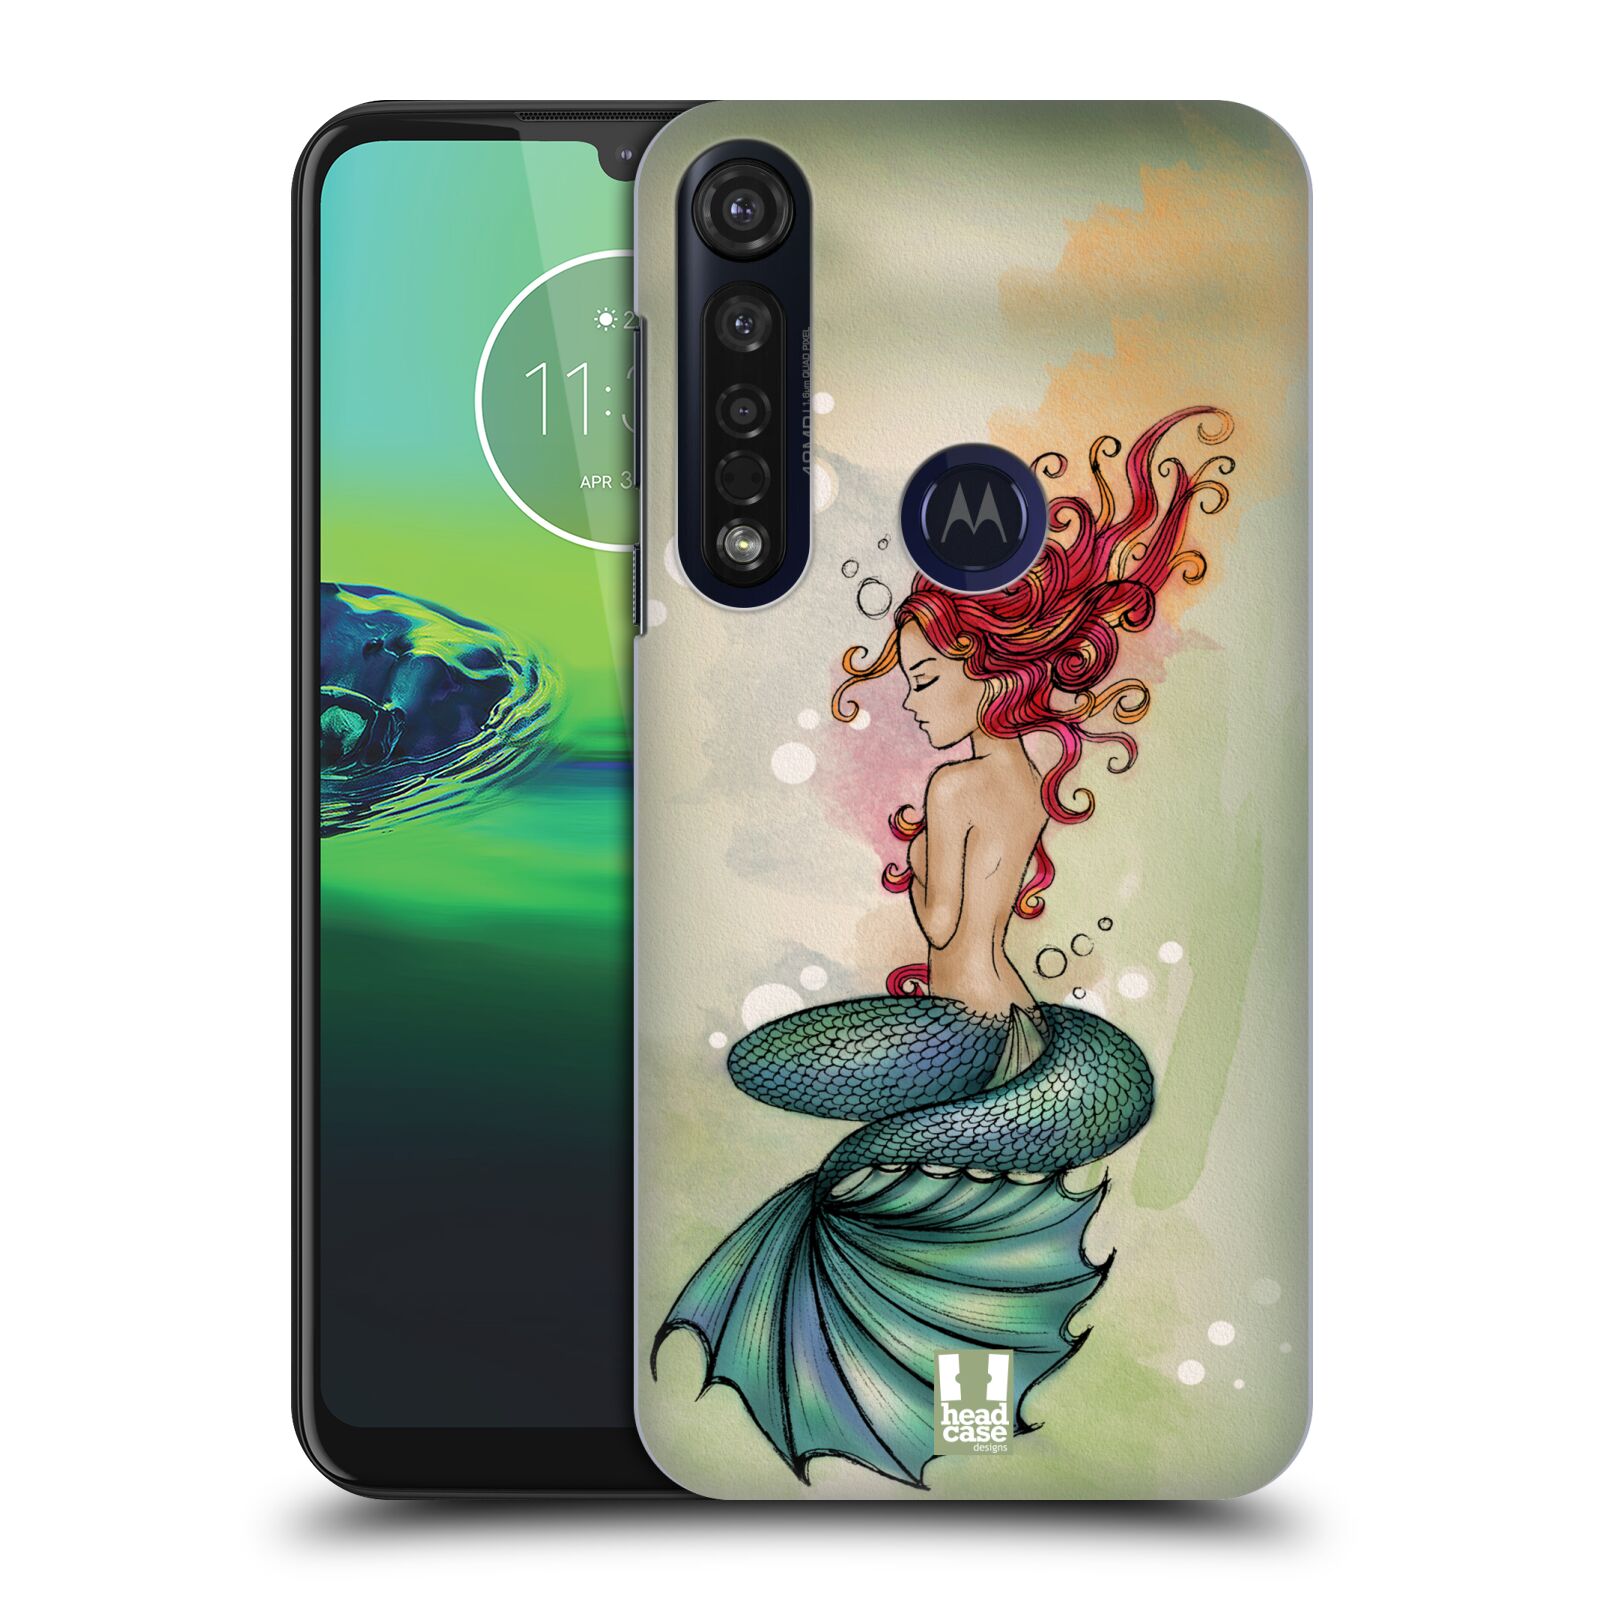 Pouzdro na mobil Motorola Moto G8 PLUS - HEAD CASE - vzor Mořská víla ZELENÁ